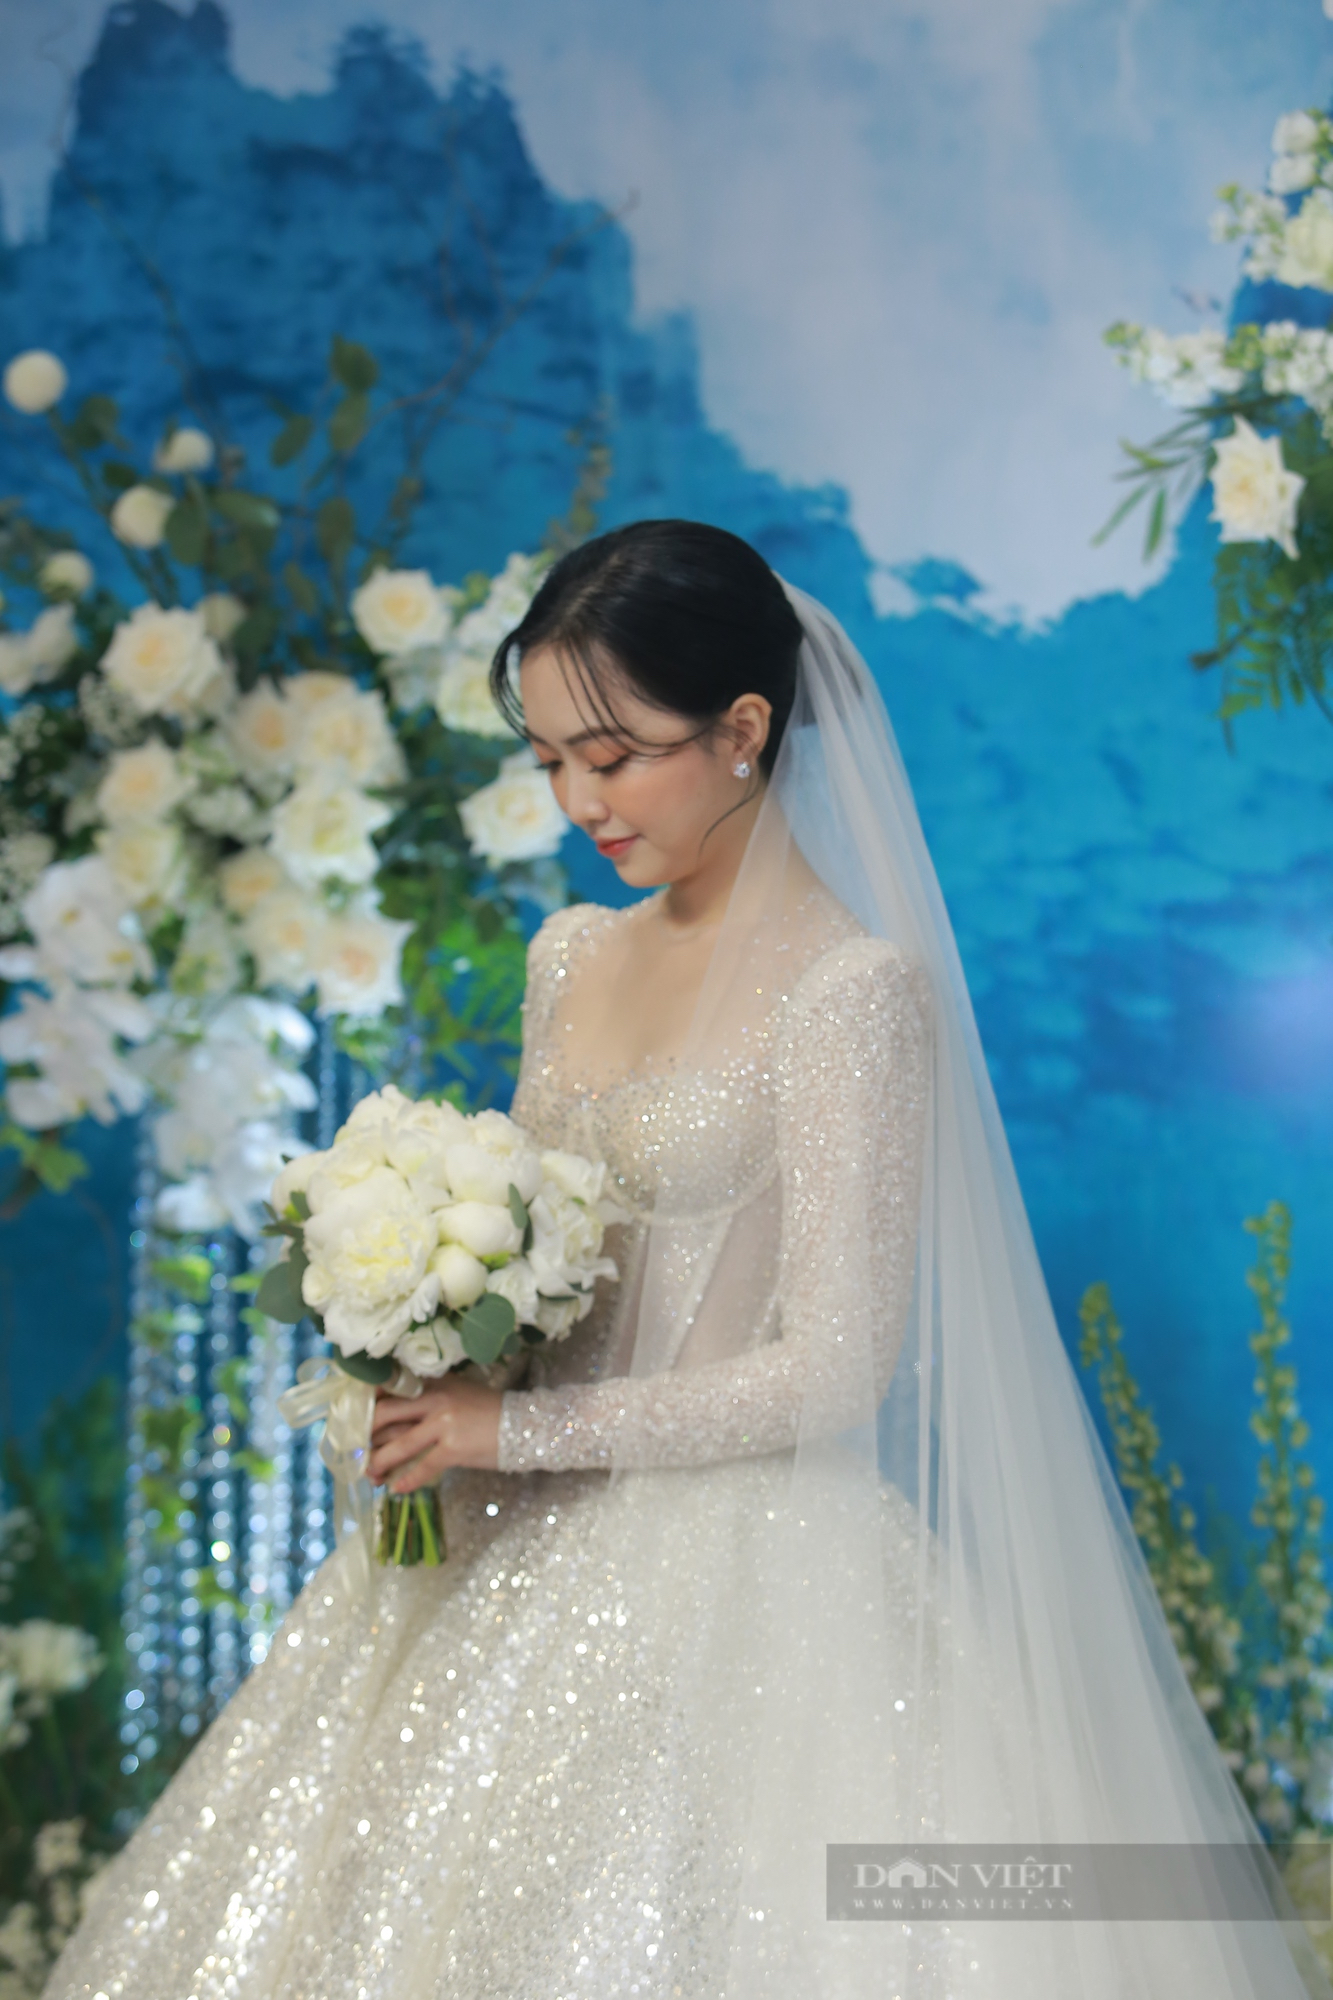 Dàn cầu thủ ĐT Việt Nam xuất hiện trong đám cưới của Đức Chinh - Ảnh 1.